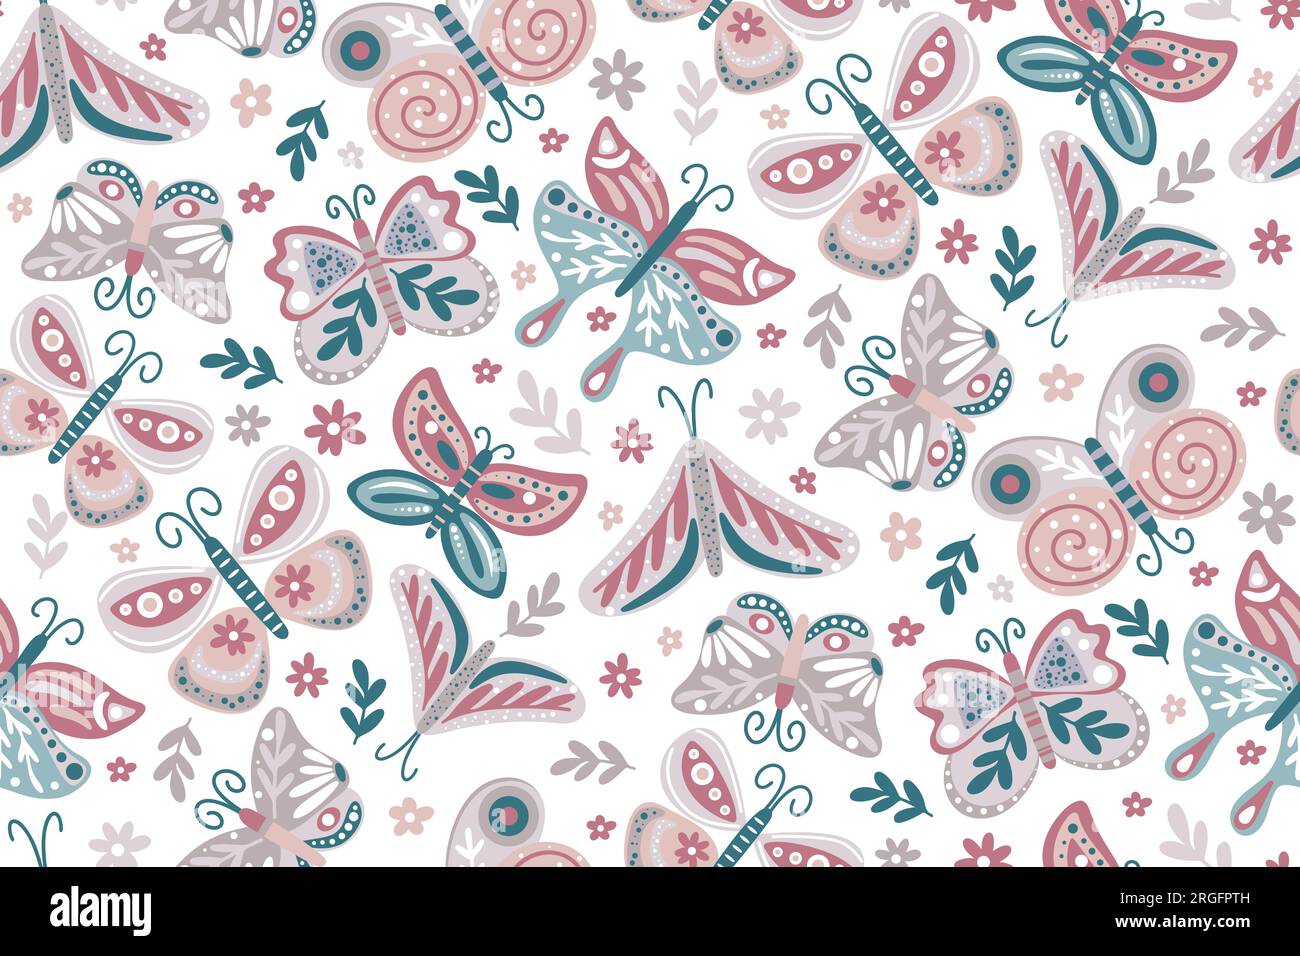 Schmetterlinge, Blumen, Laub und Kräuter, nahtloses Muster. Handgezeichneter botanischer wunderschöner Hintergrund. Femininer Blumendruck mit Motten für Textilien Stock Vektor